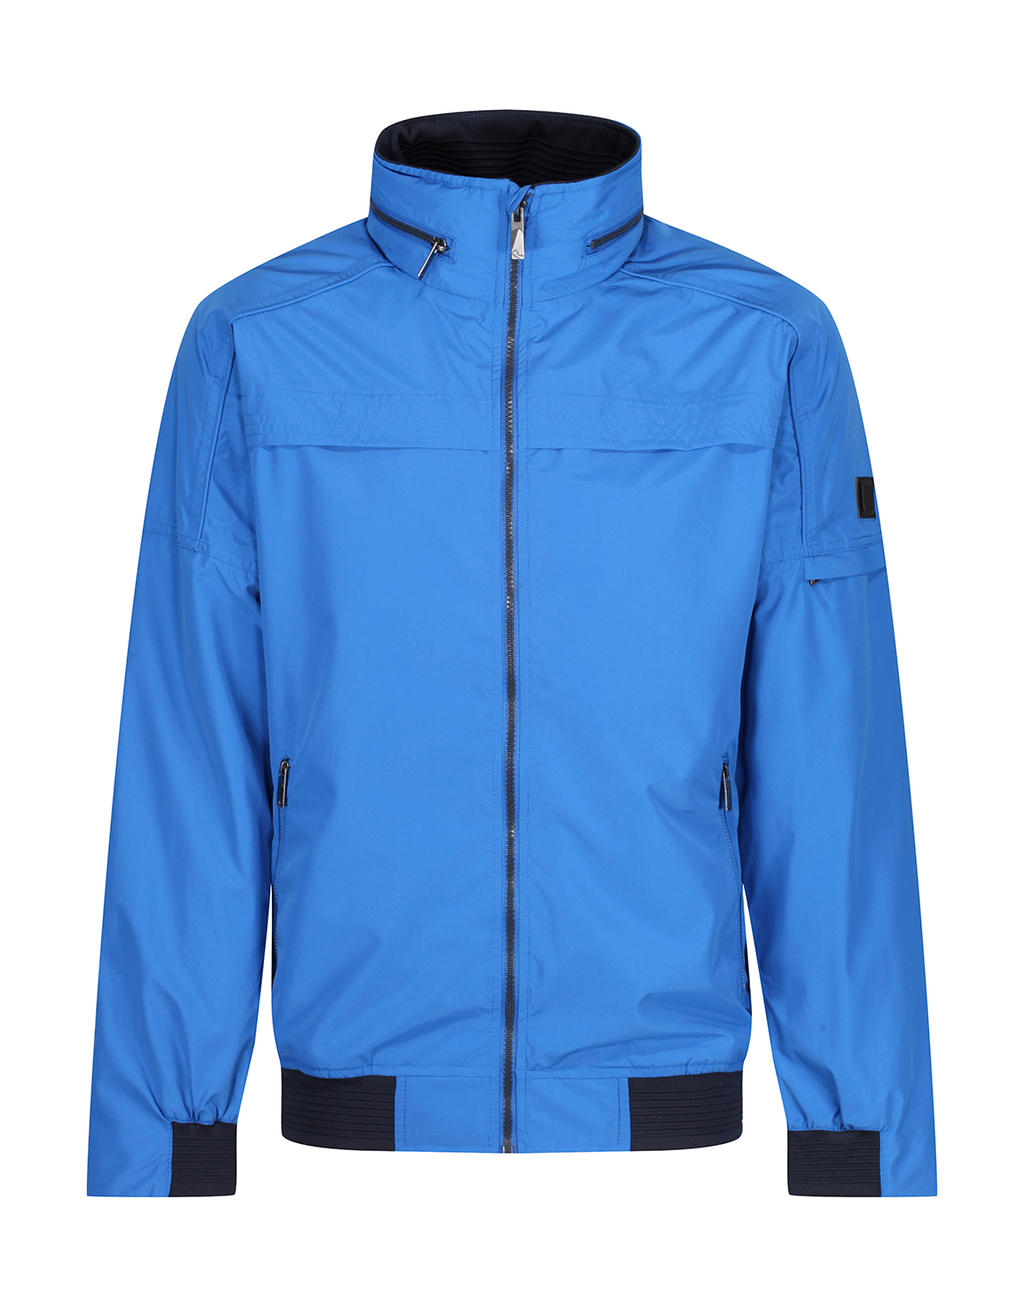  Finn Waterproof Shell Jacket in Farbe Nautical Blue